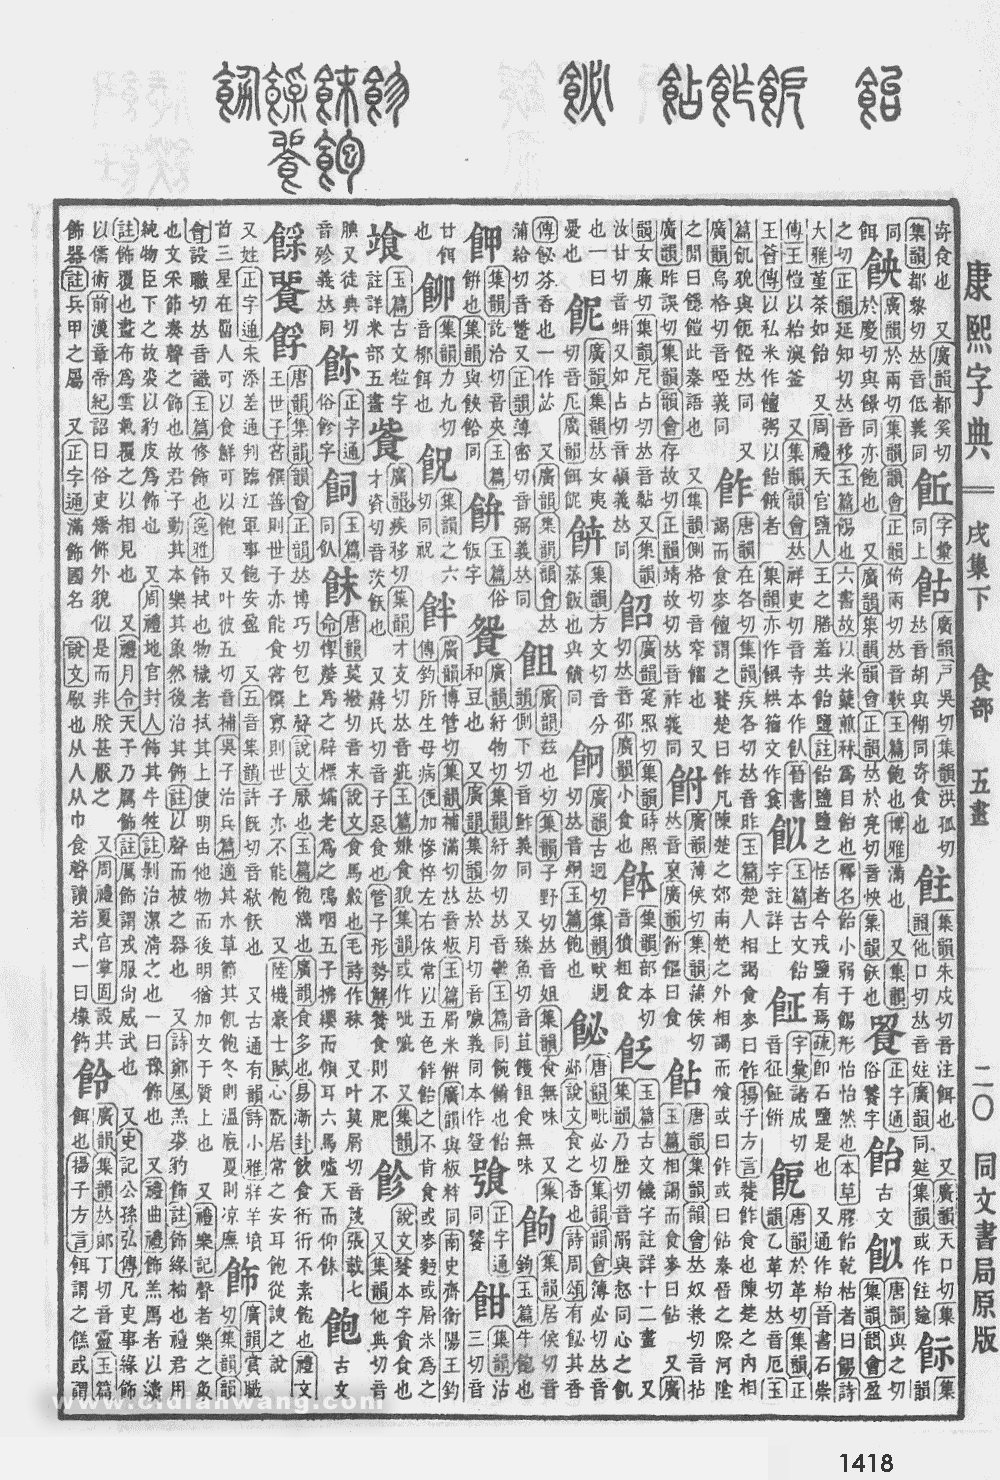 康熙字典掃描版第1418頁